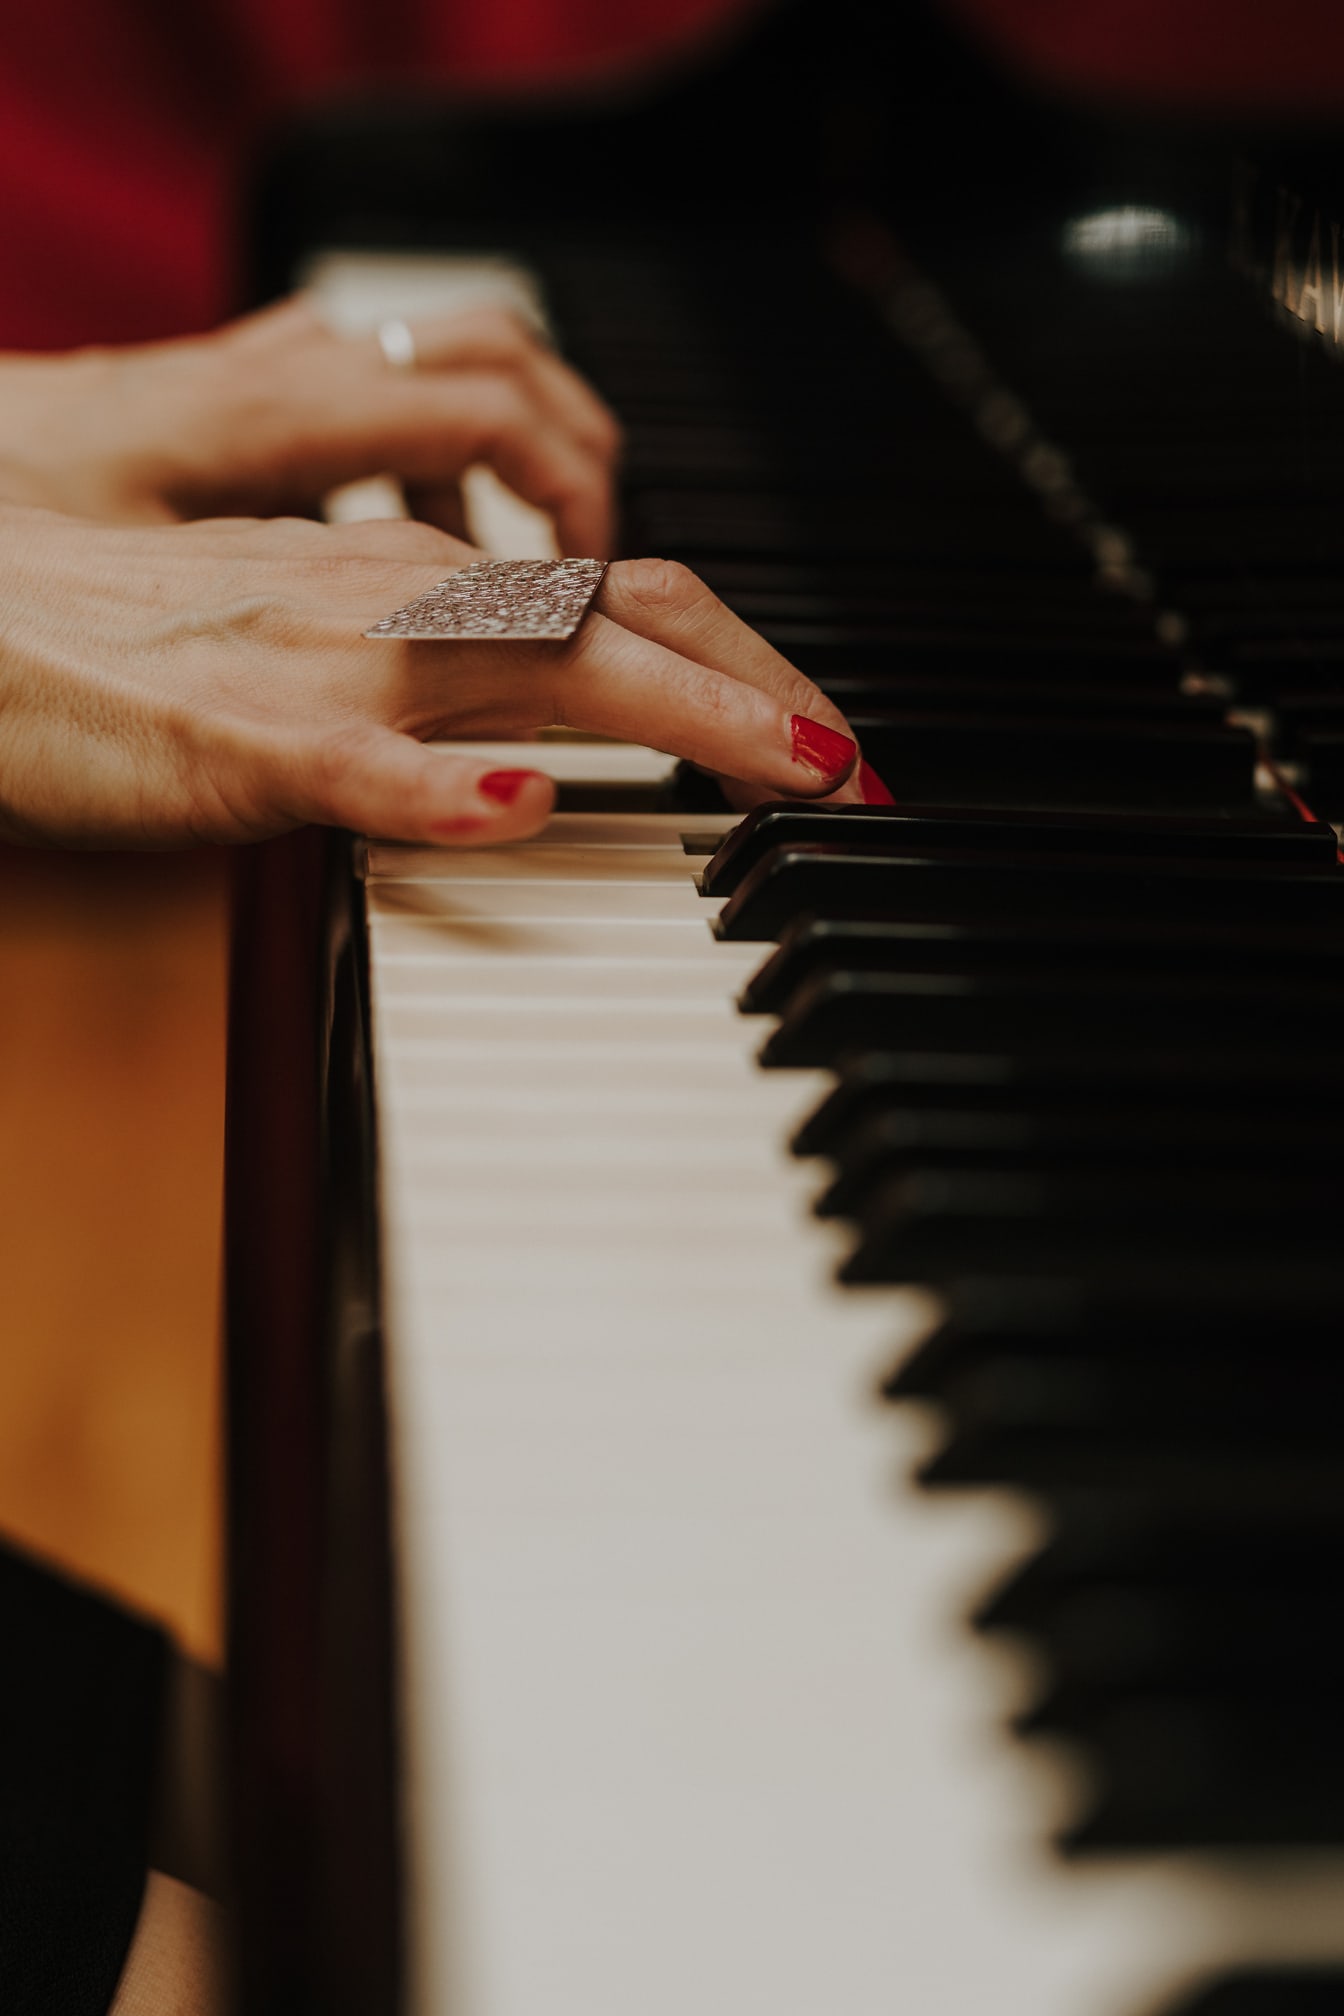 Close-up tangan bermain piano dengan cat kuku merah di jari